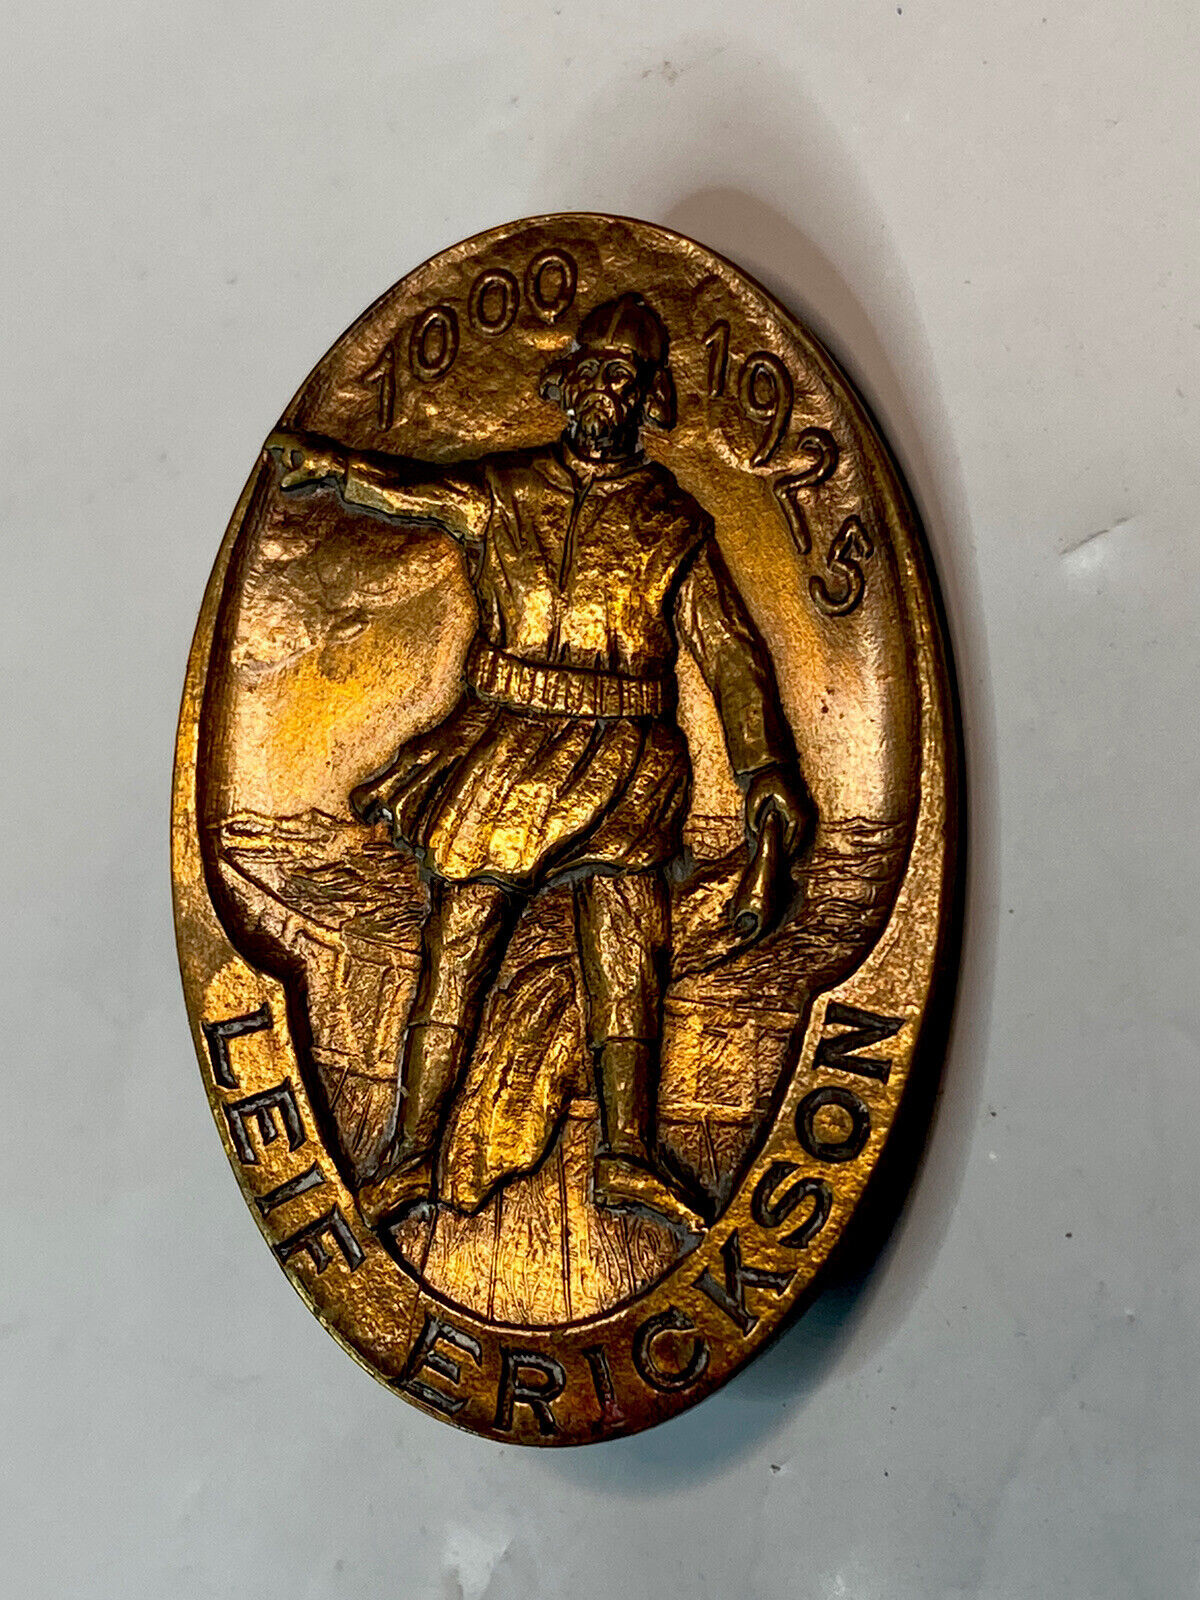 Antique Leif Erickson 1000-1925 Explorer Pin EXTREMELY RARE